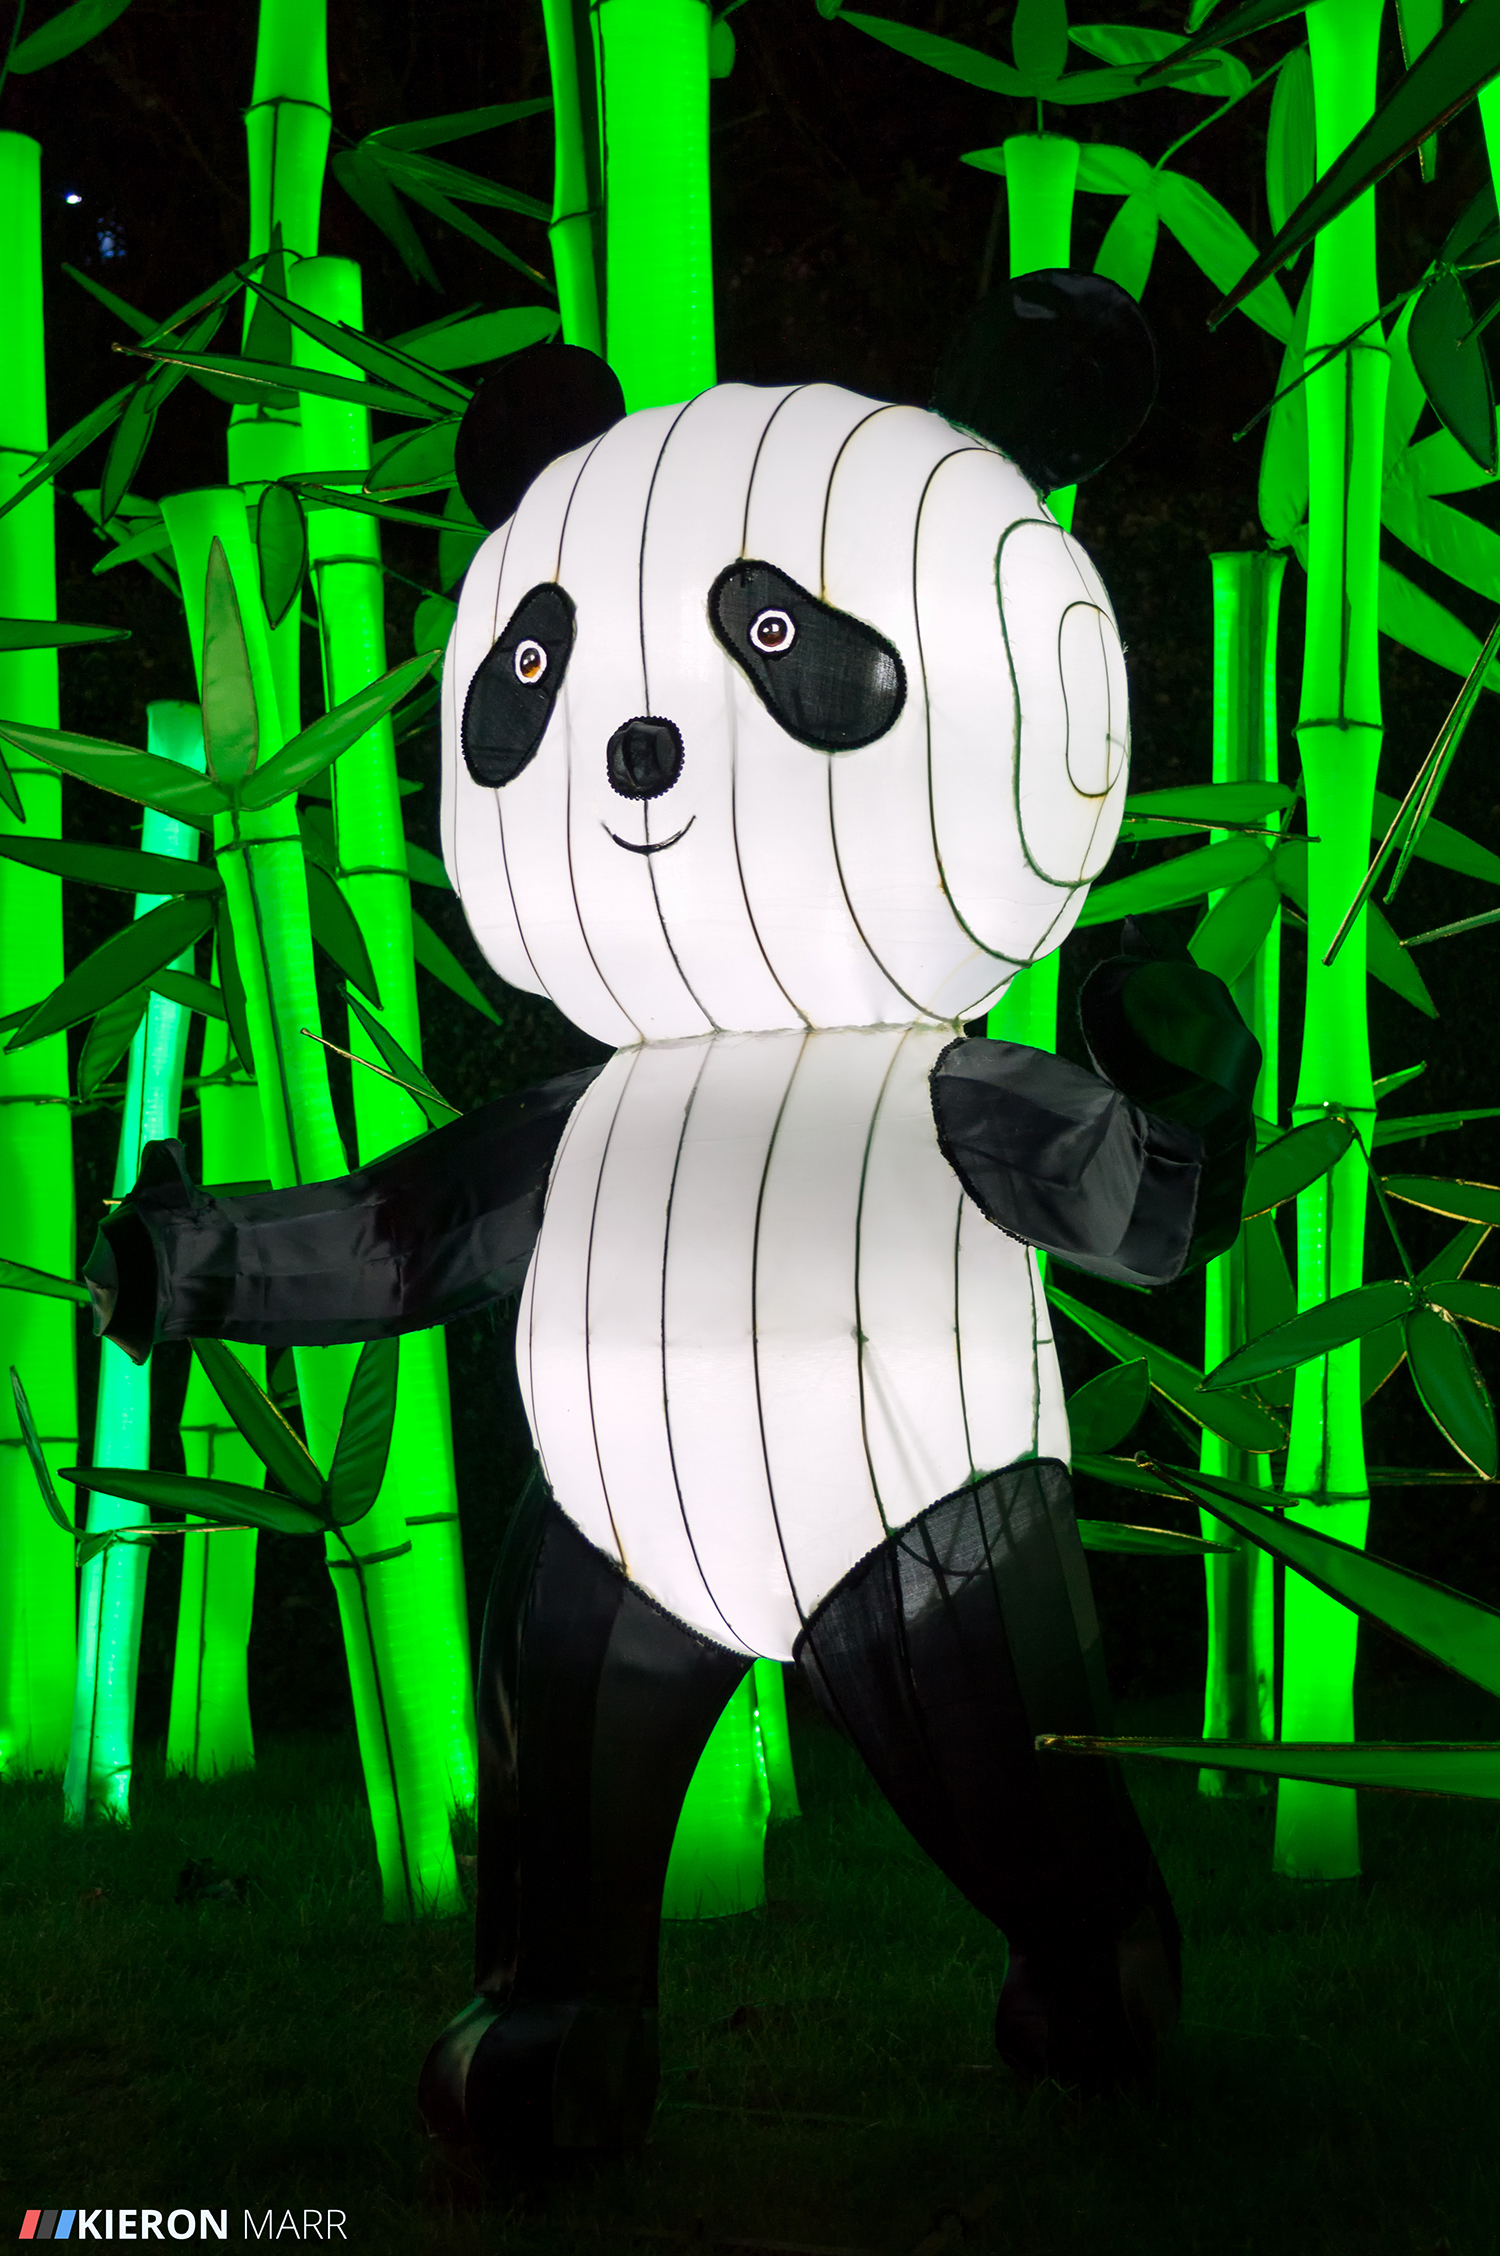 Longleat Festival of Light 2014 - Panda Garden